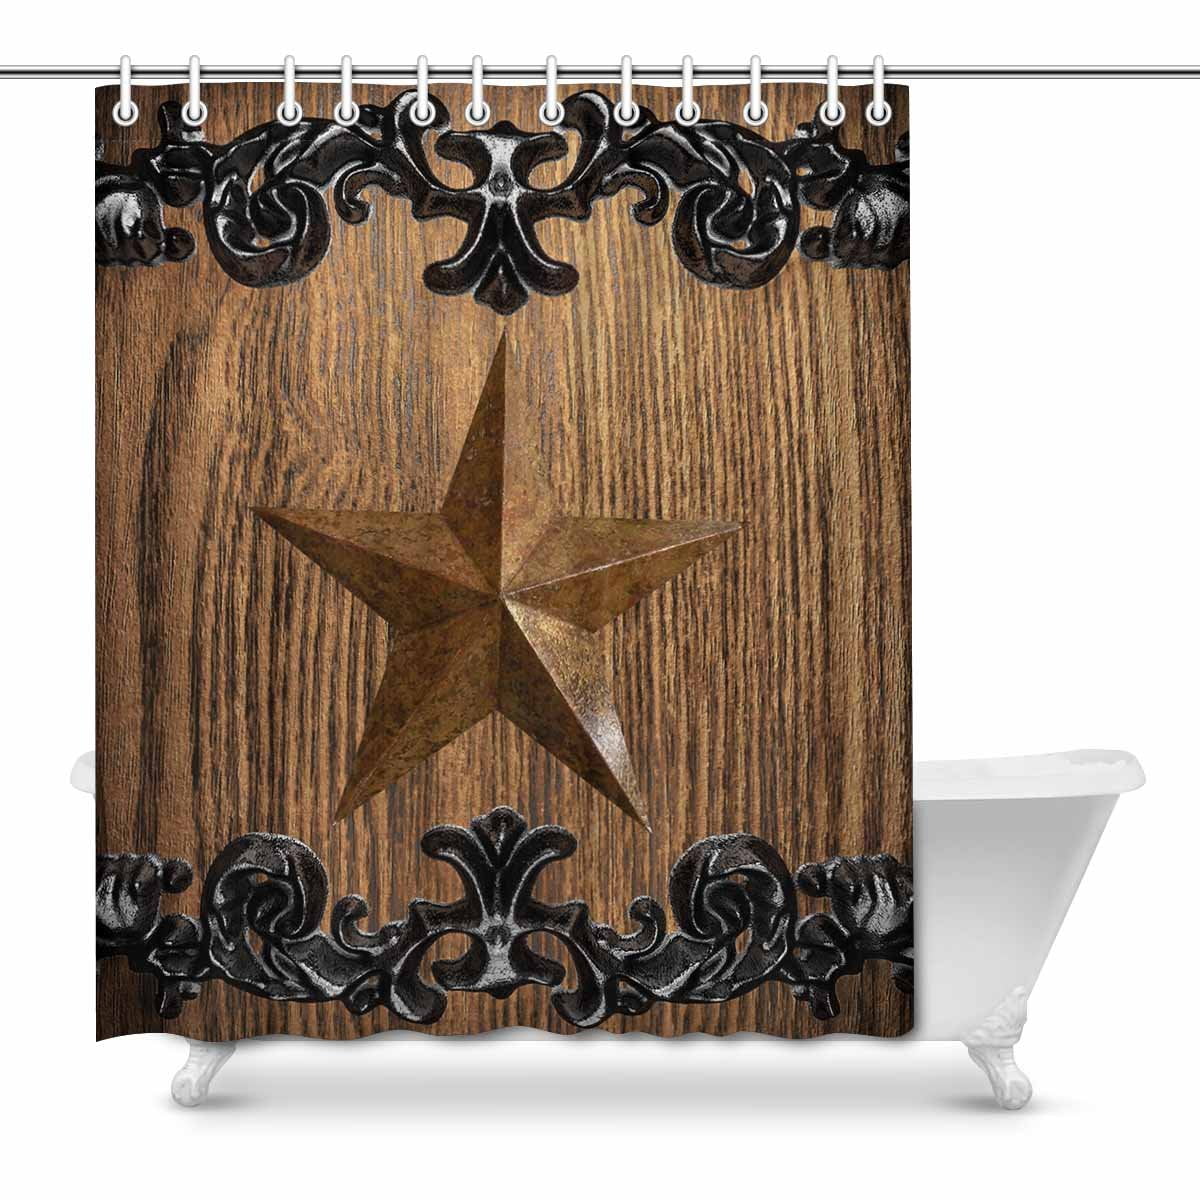 Western Shower Curtain Texas Star Barb Wire Rustic 60x72" Bathroom Decor NEW 